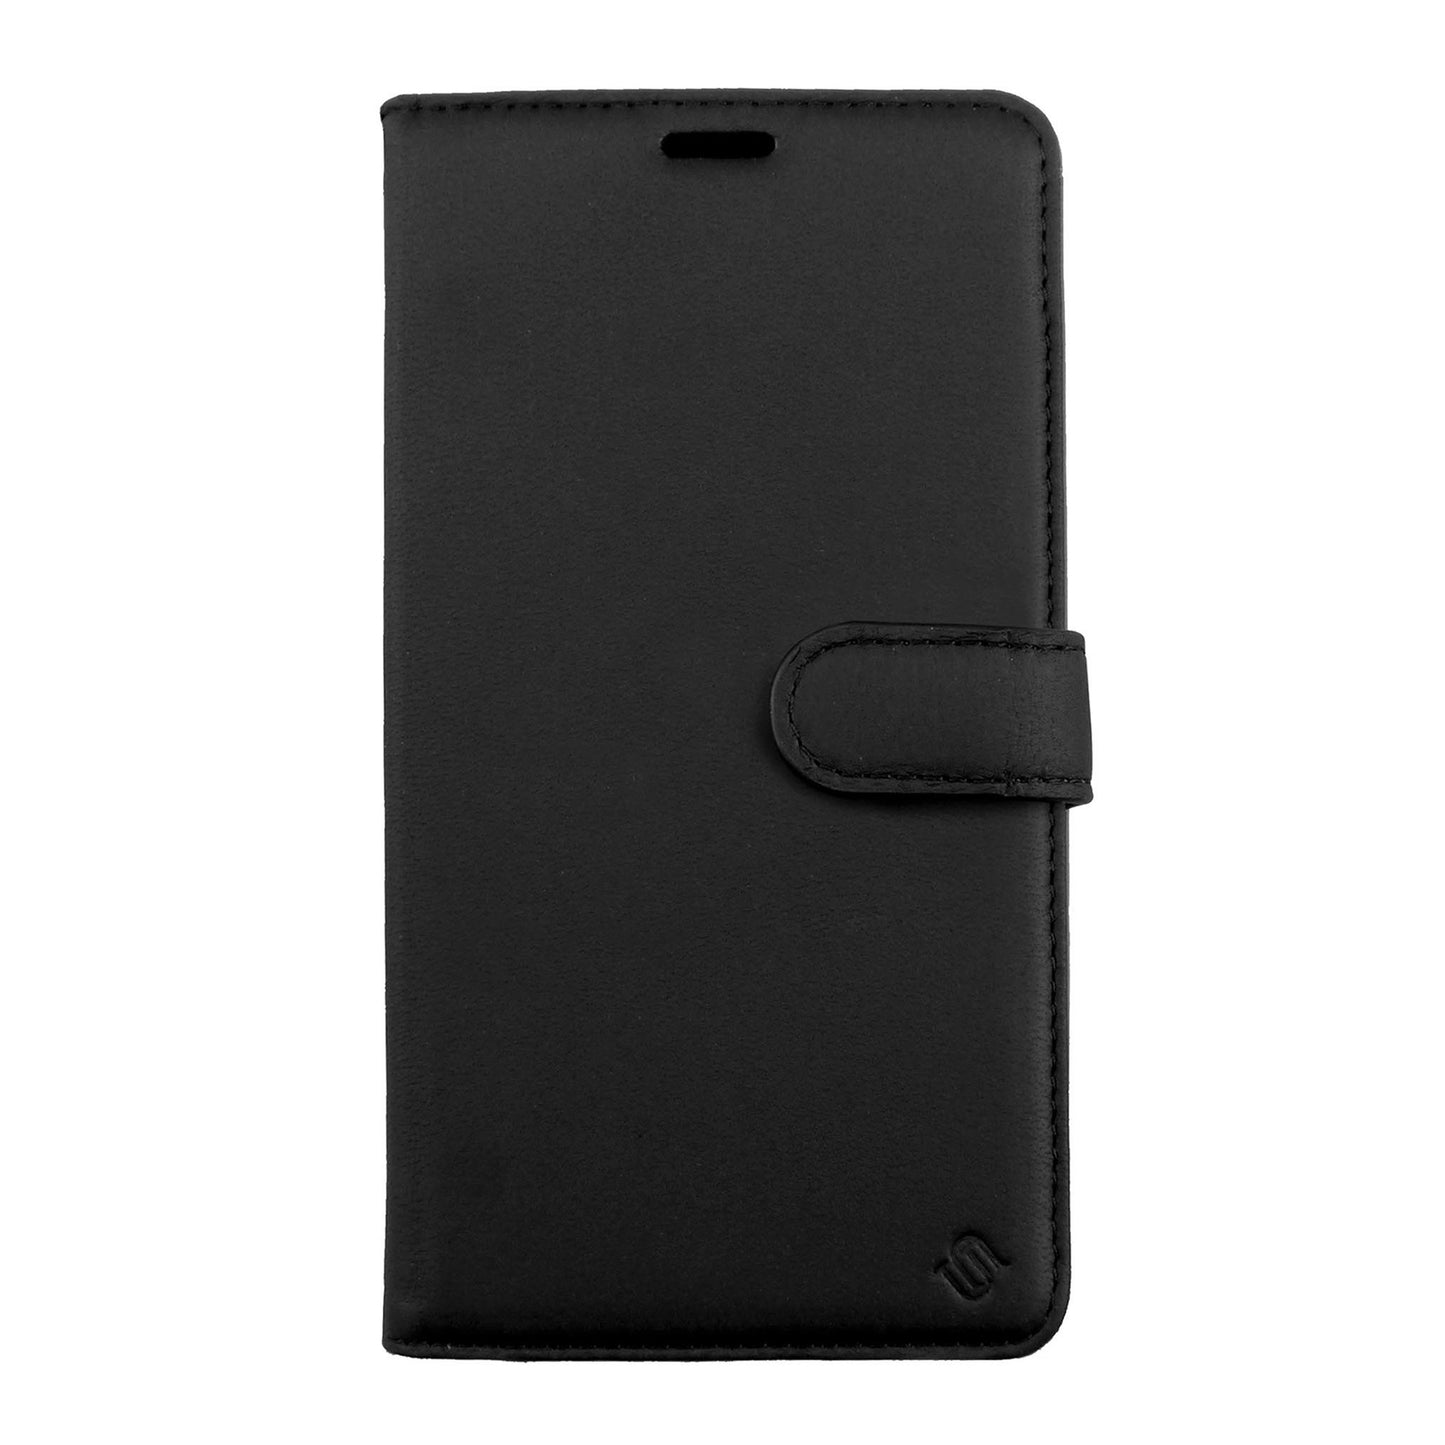 iPhone 15 Plus/14 Plus Uunique 2-in-1 Leather Folio & Detachable Back MagSafe Case - Black/Red - 15-11356